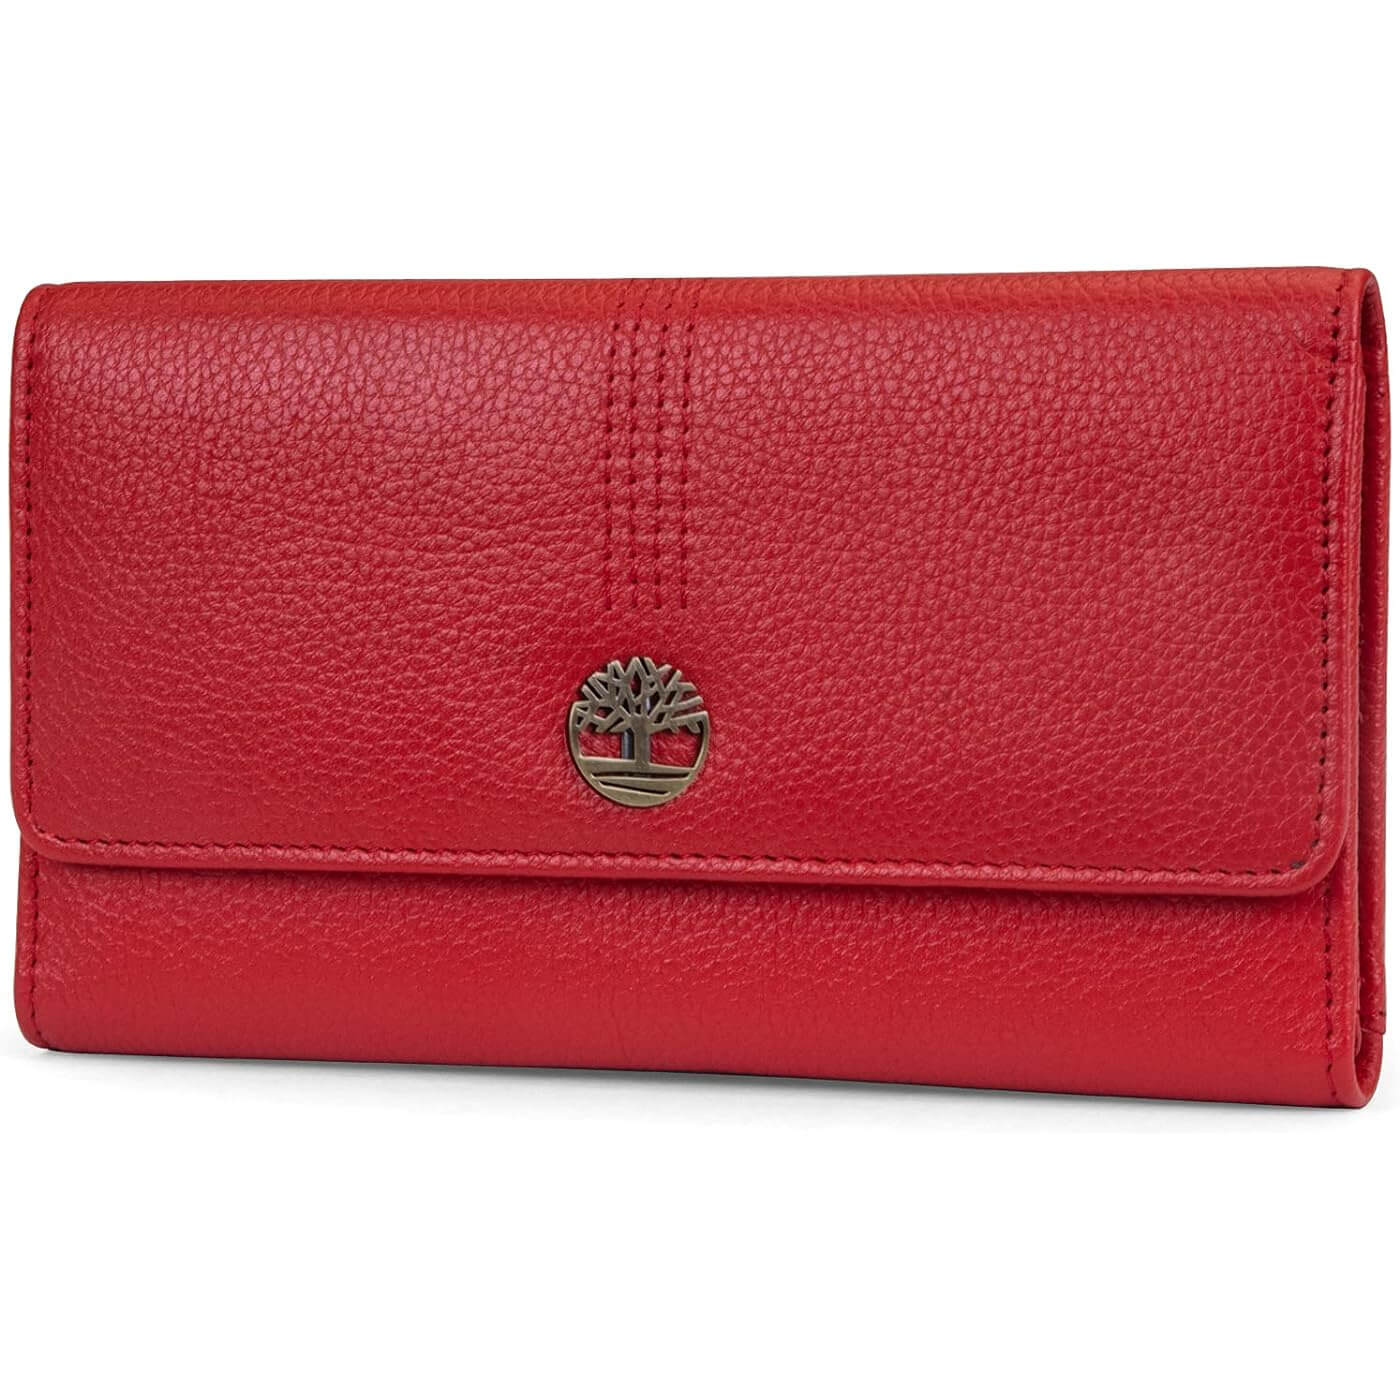 Кошелек-клатч из зернистой кожи Timberland RFID Flap Organizer, красный кошелек кожаный женский lison kaoberg k 9102